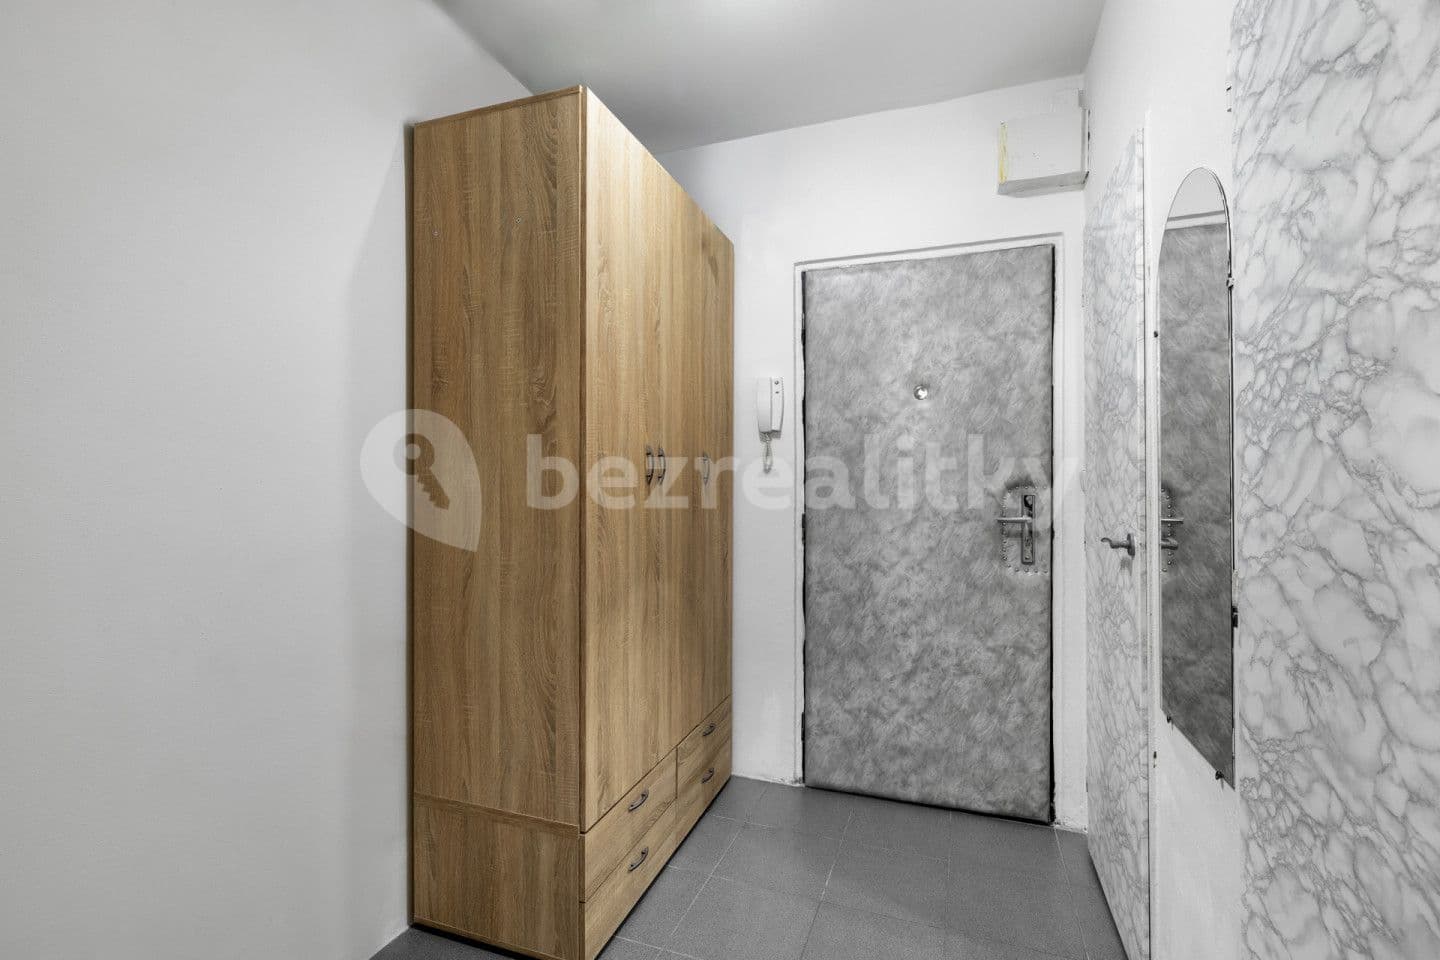 1 bedroom with open-plan kitchen flat for sale, 38 m², Holandská, Kladno, Středočeský Region